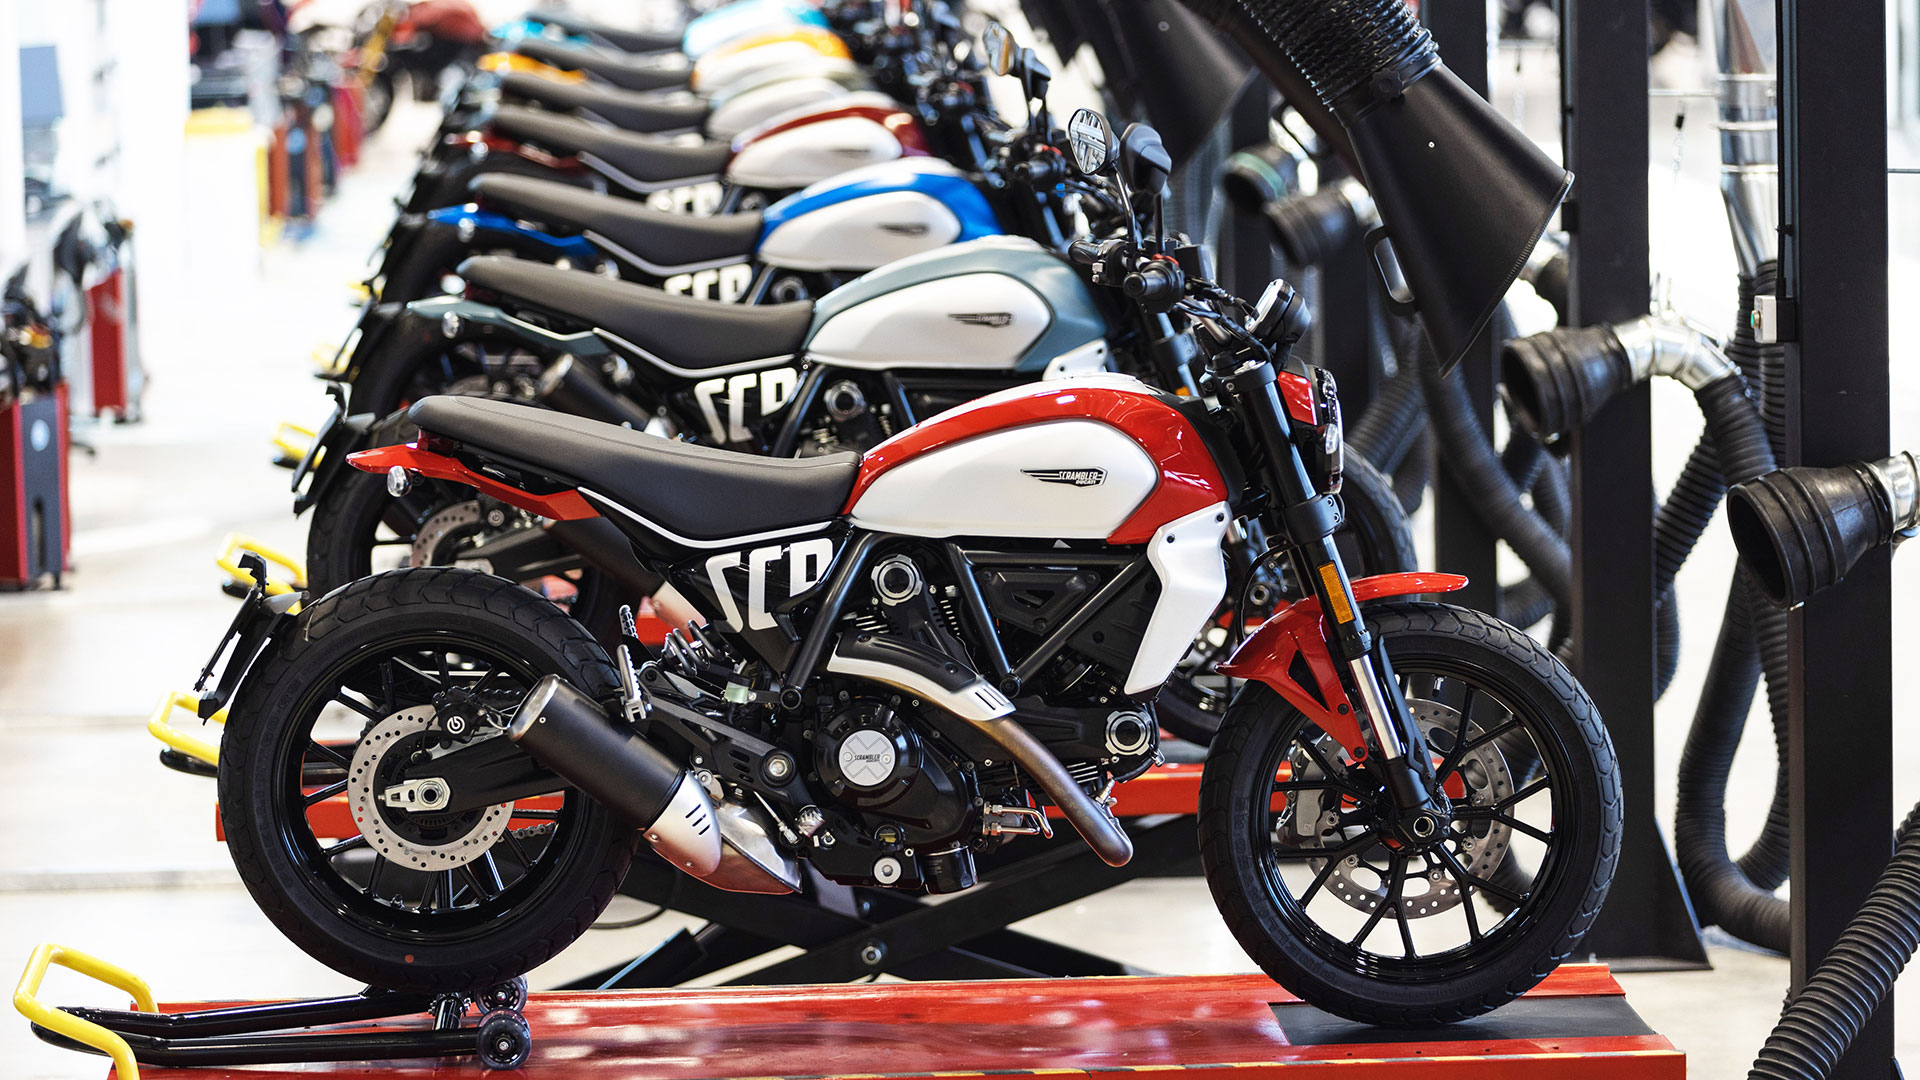 Luz verde a la producción de la Ducati Scrambler: las primeras unidades llegarán en primavera